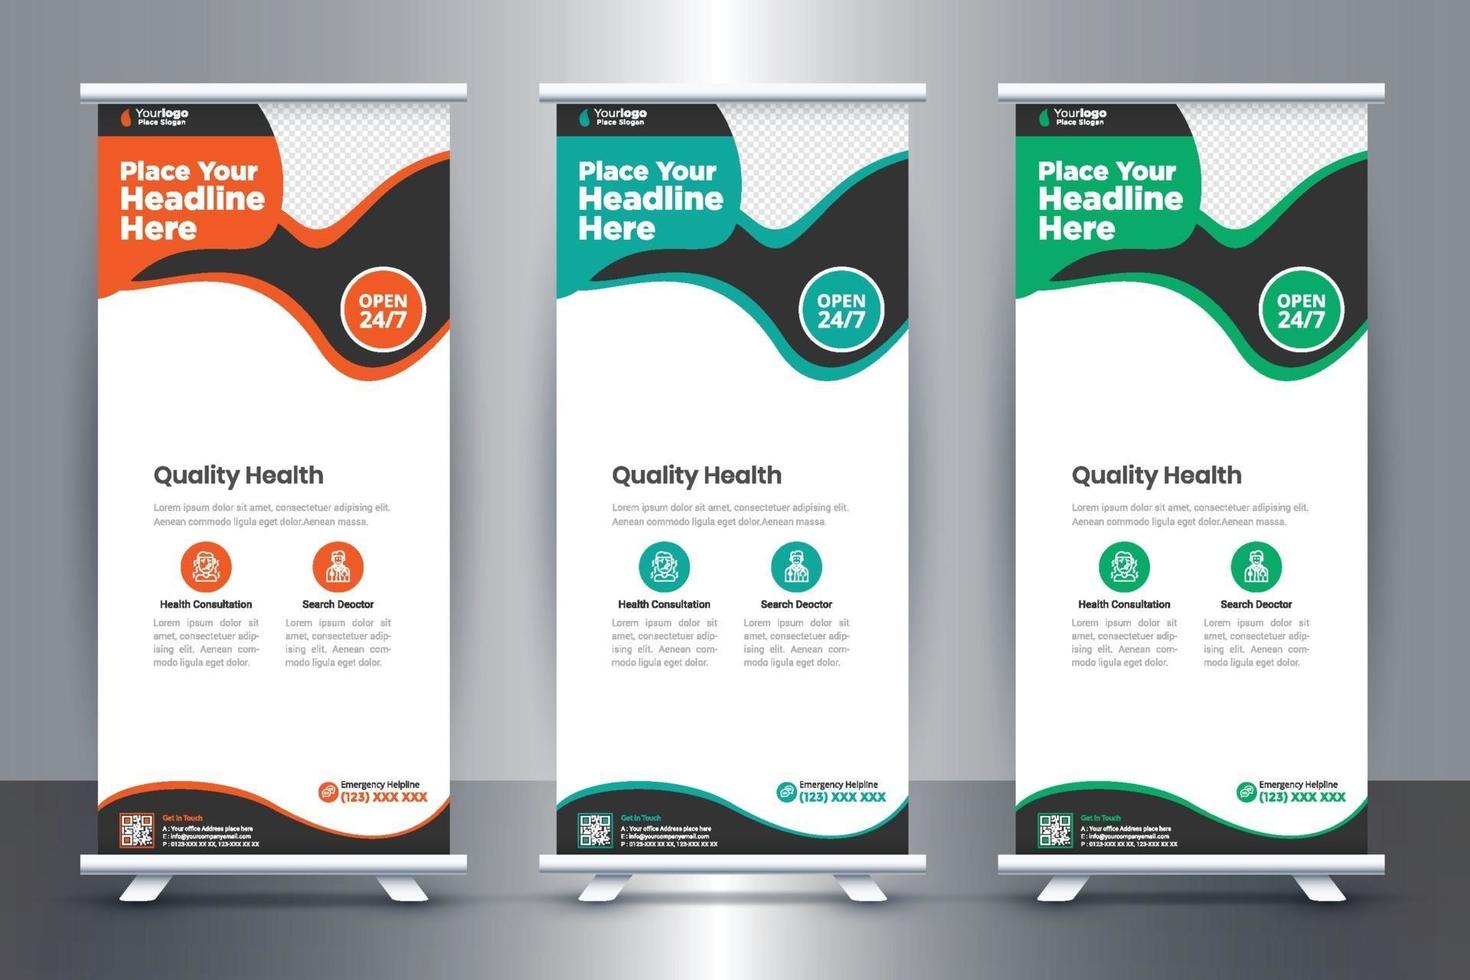 design de banner roll up médico gratuito para hospitais e cuidados de saúde vetor